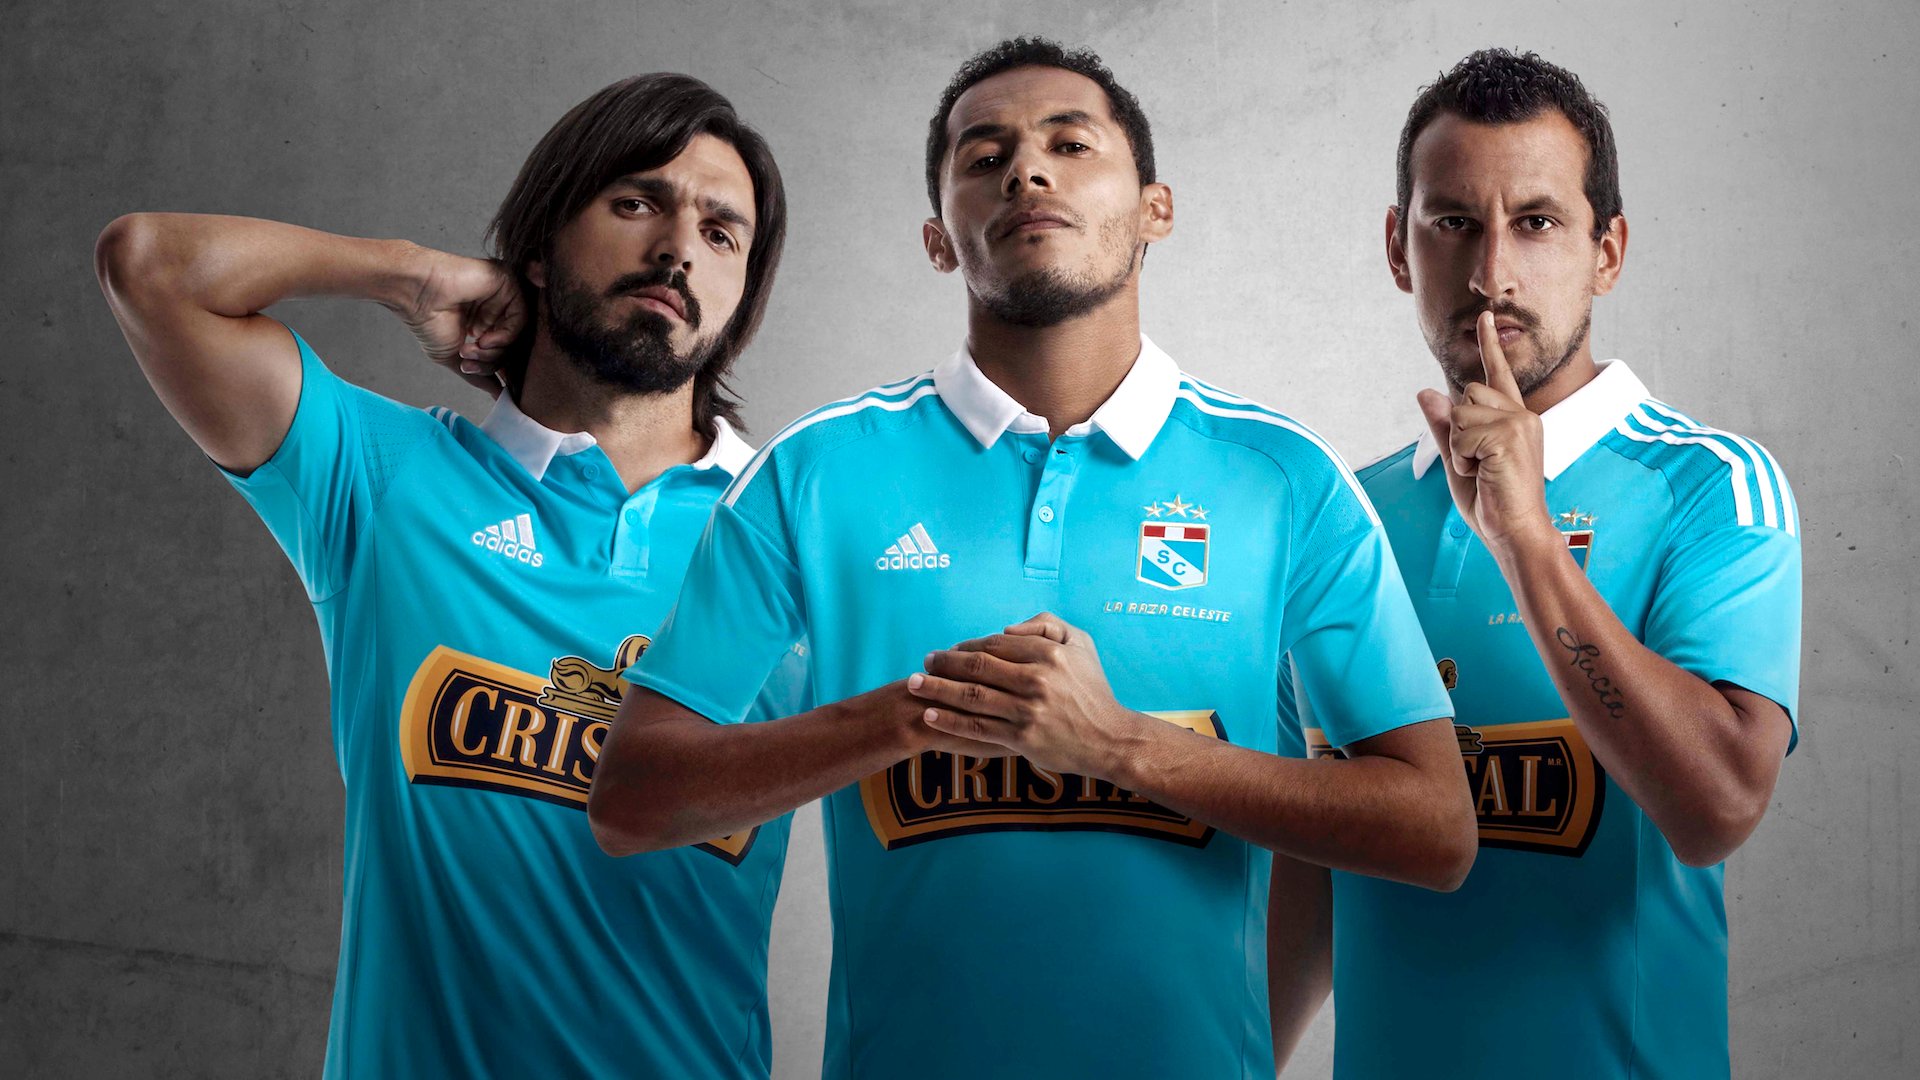 El club Sporting Cristal presentó su nueva camiseta oficial con el